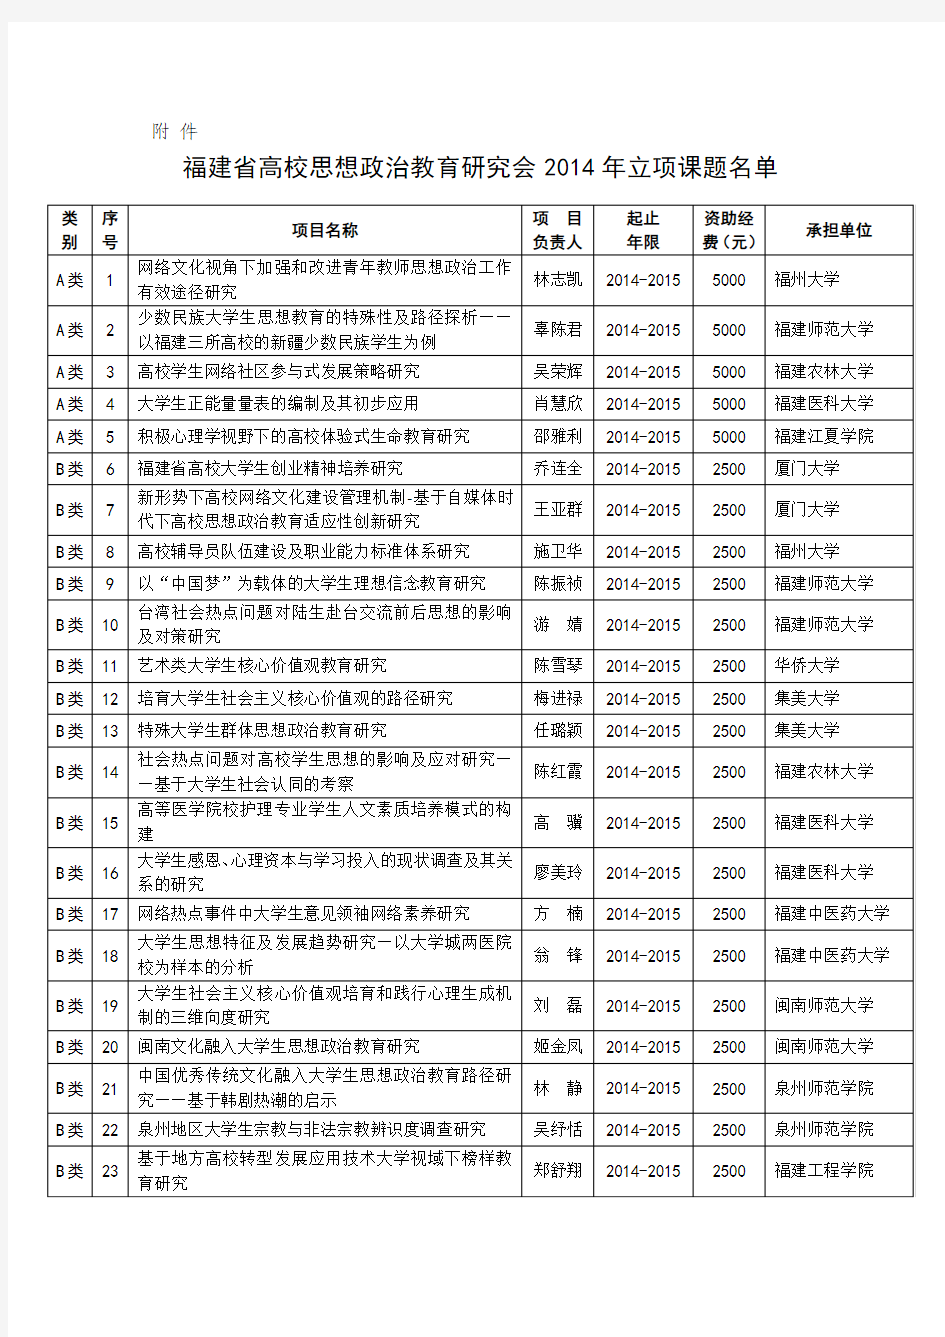 福建省高校思想政治教育研究会2014年立项课题名单